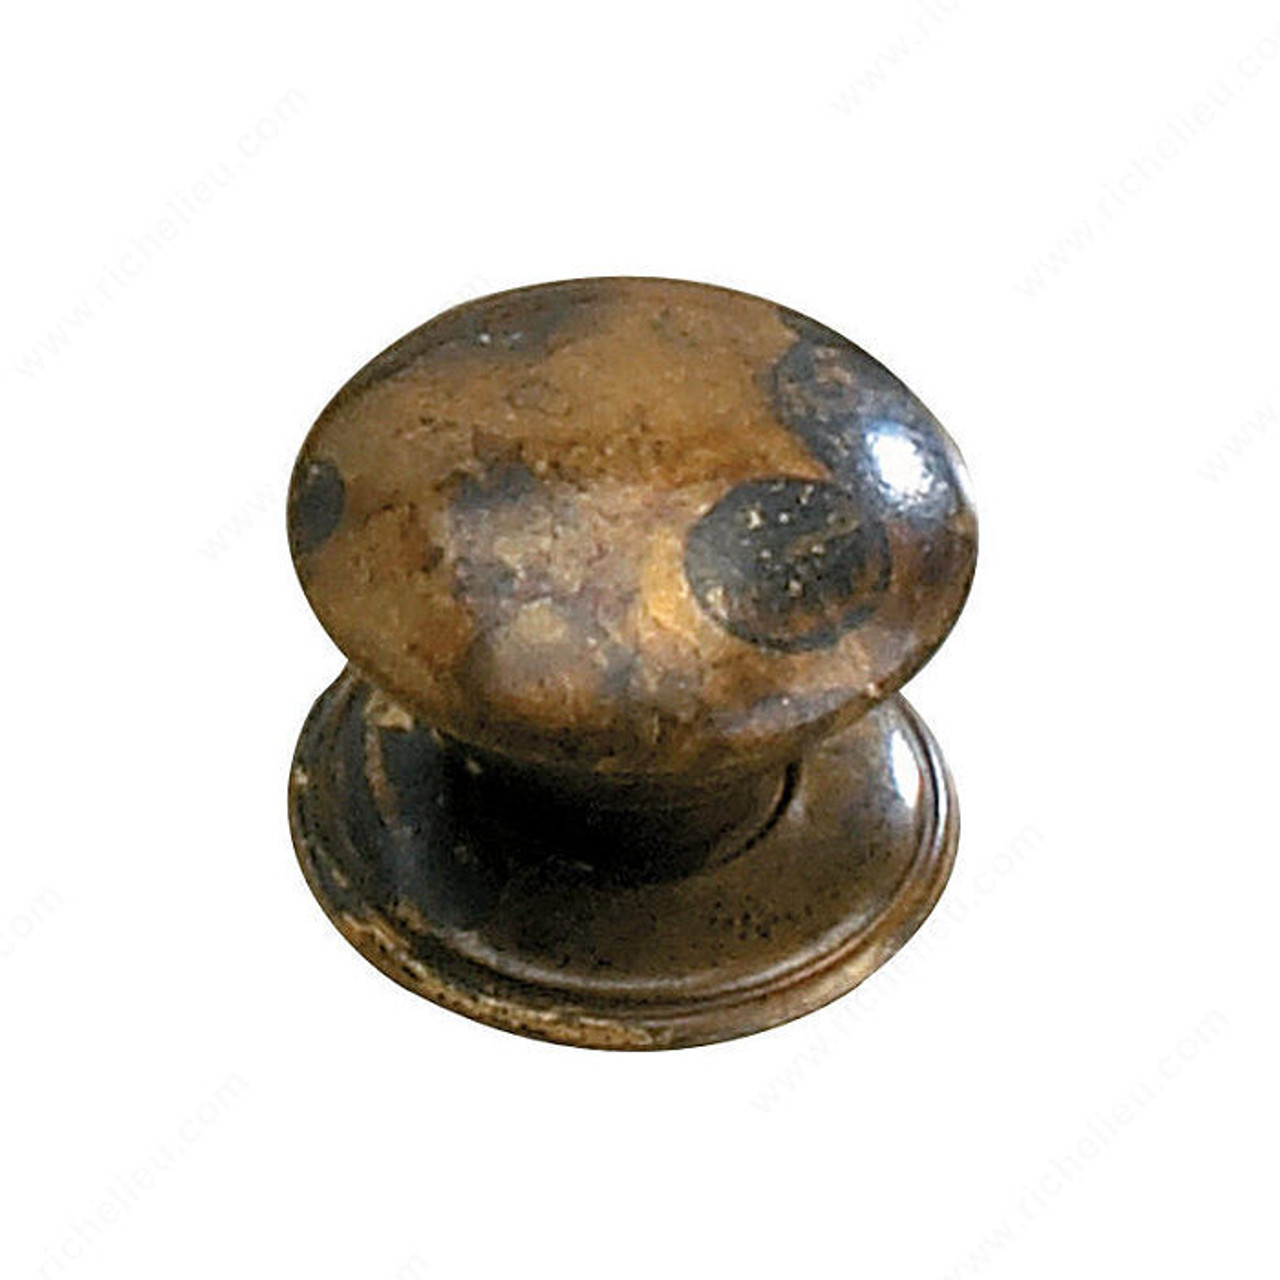 Traditional Brass Knob - 2440, Finish Oxidized Brass, Screw/Nail M4  (Included)